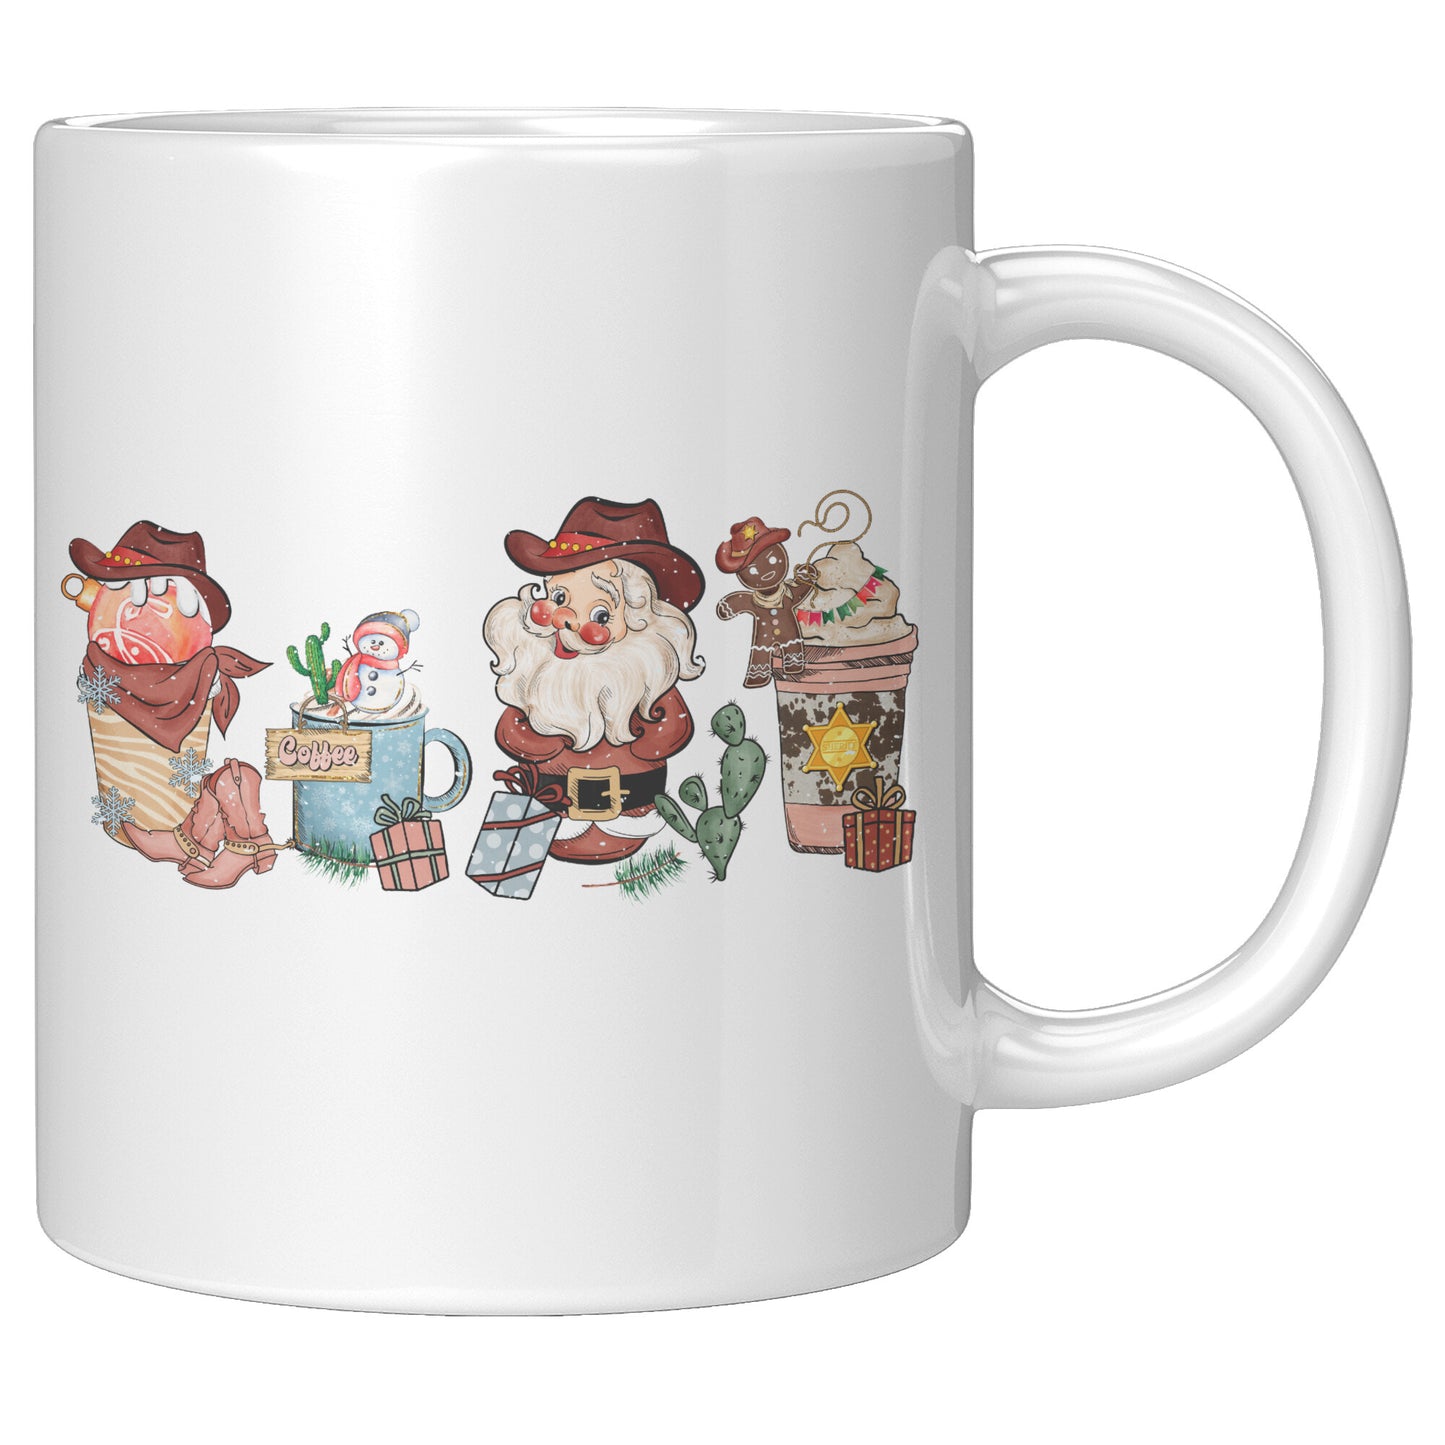 Cowgirl Christmas Latte Mug